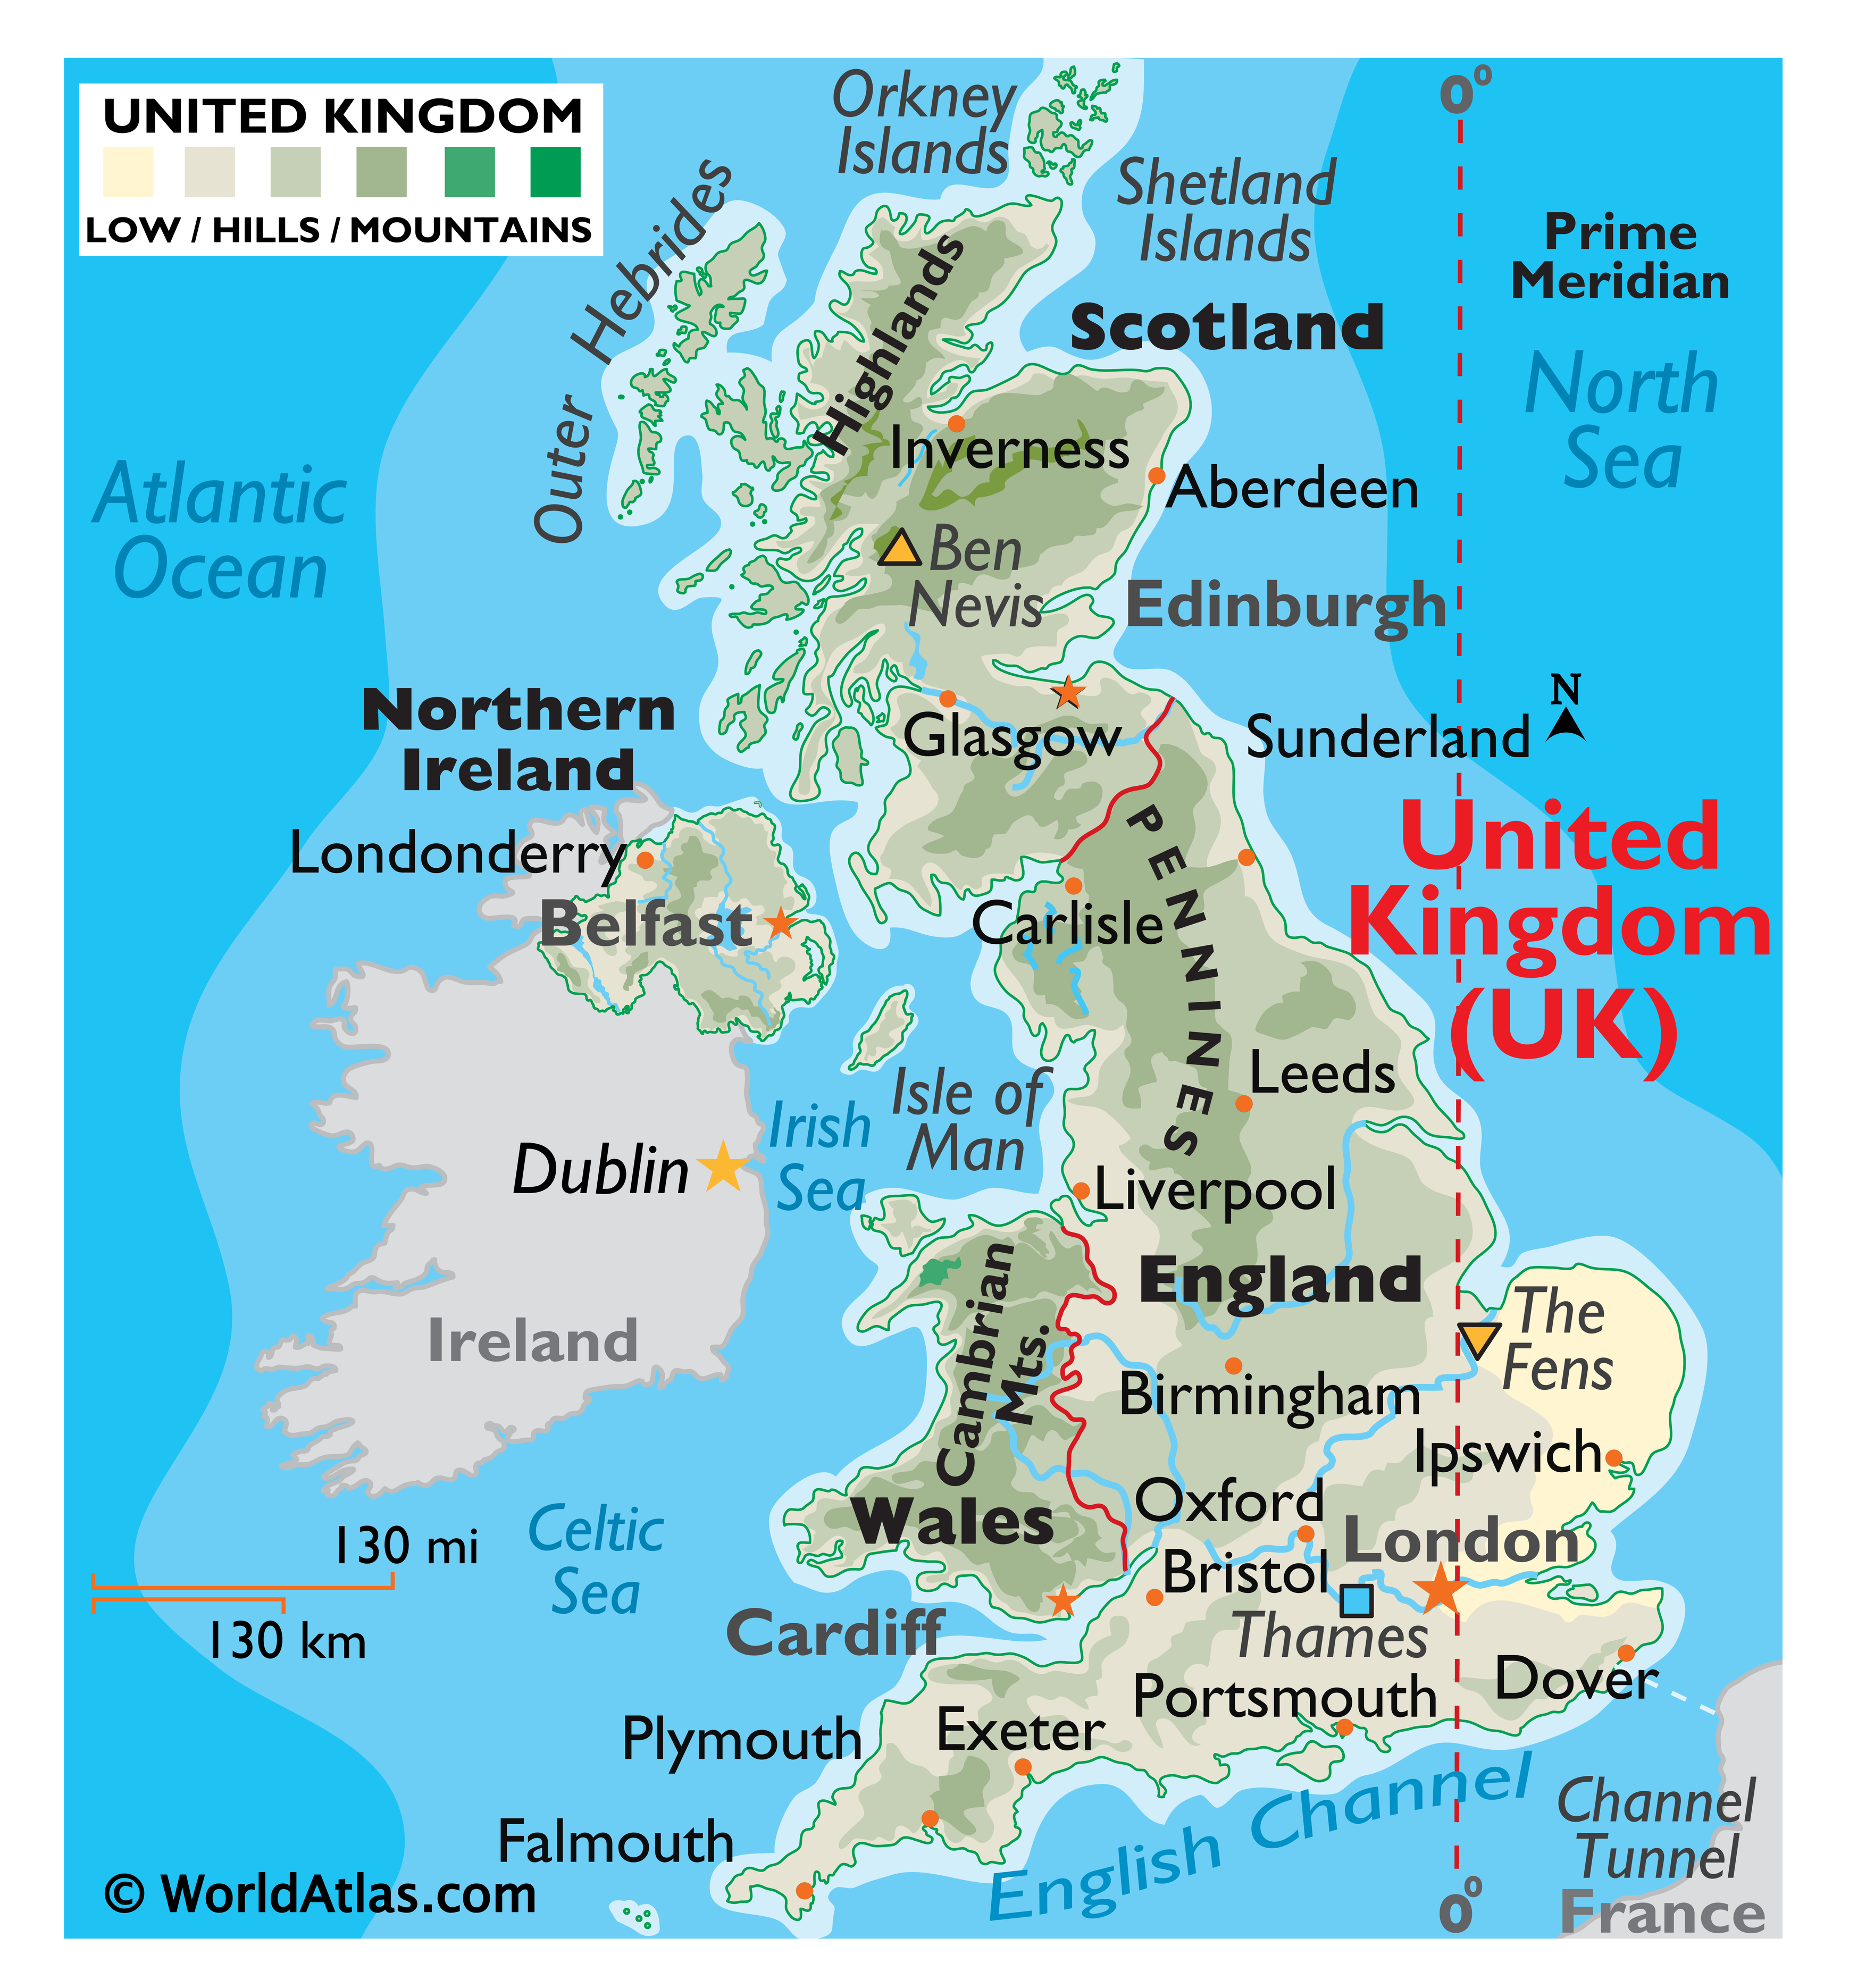 mapa uk Uk Map / Geography of United Kingdom / Map of United Kingdom  mapa uk